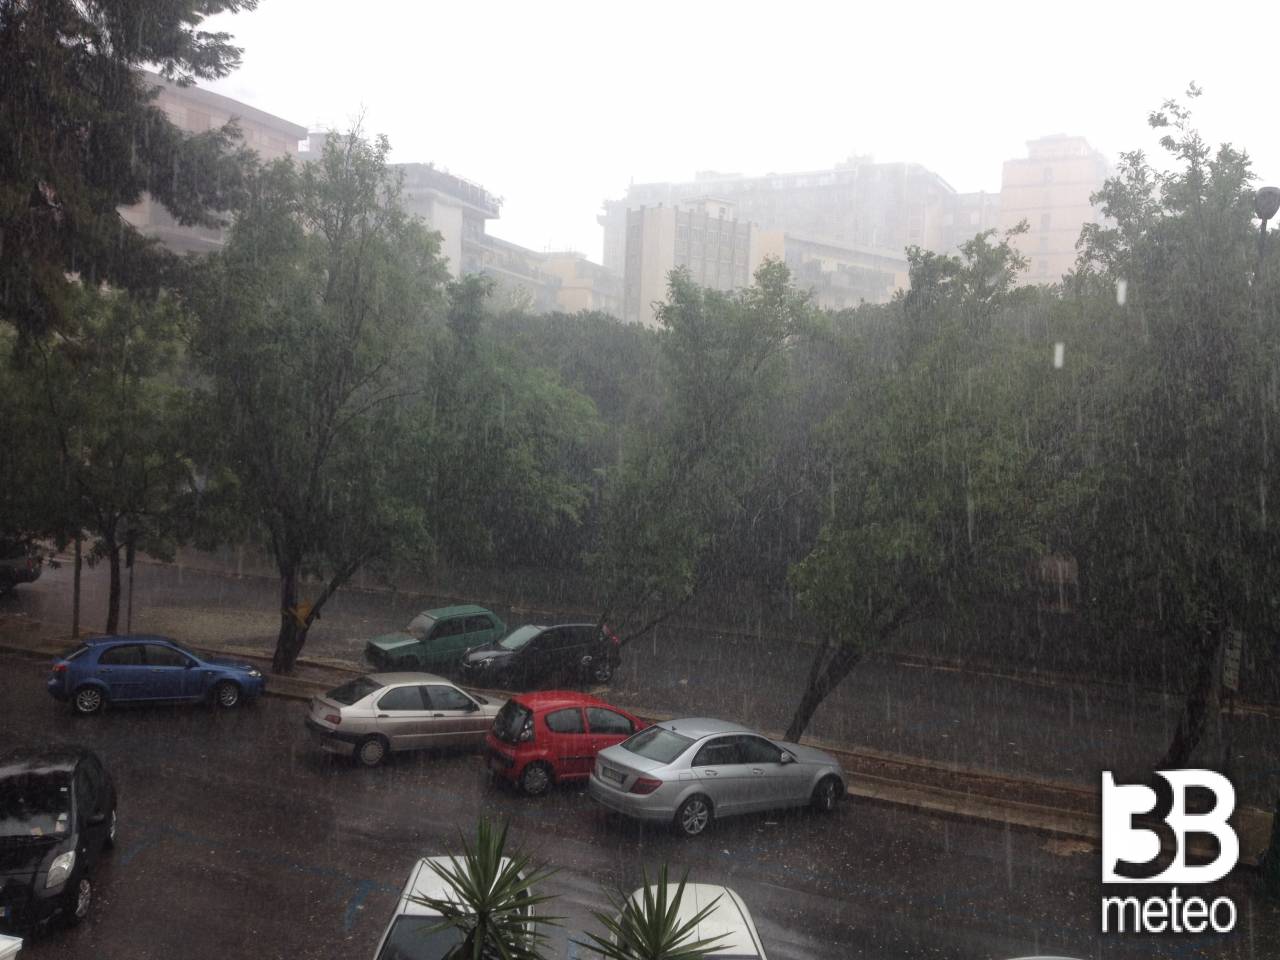 Meteo Caltanissetta: sabato piogge, poi forte maltempo - 3bmeteo